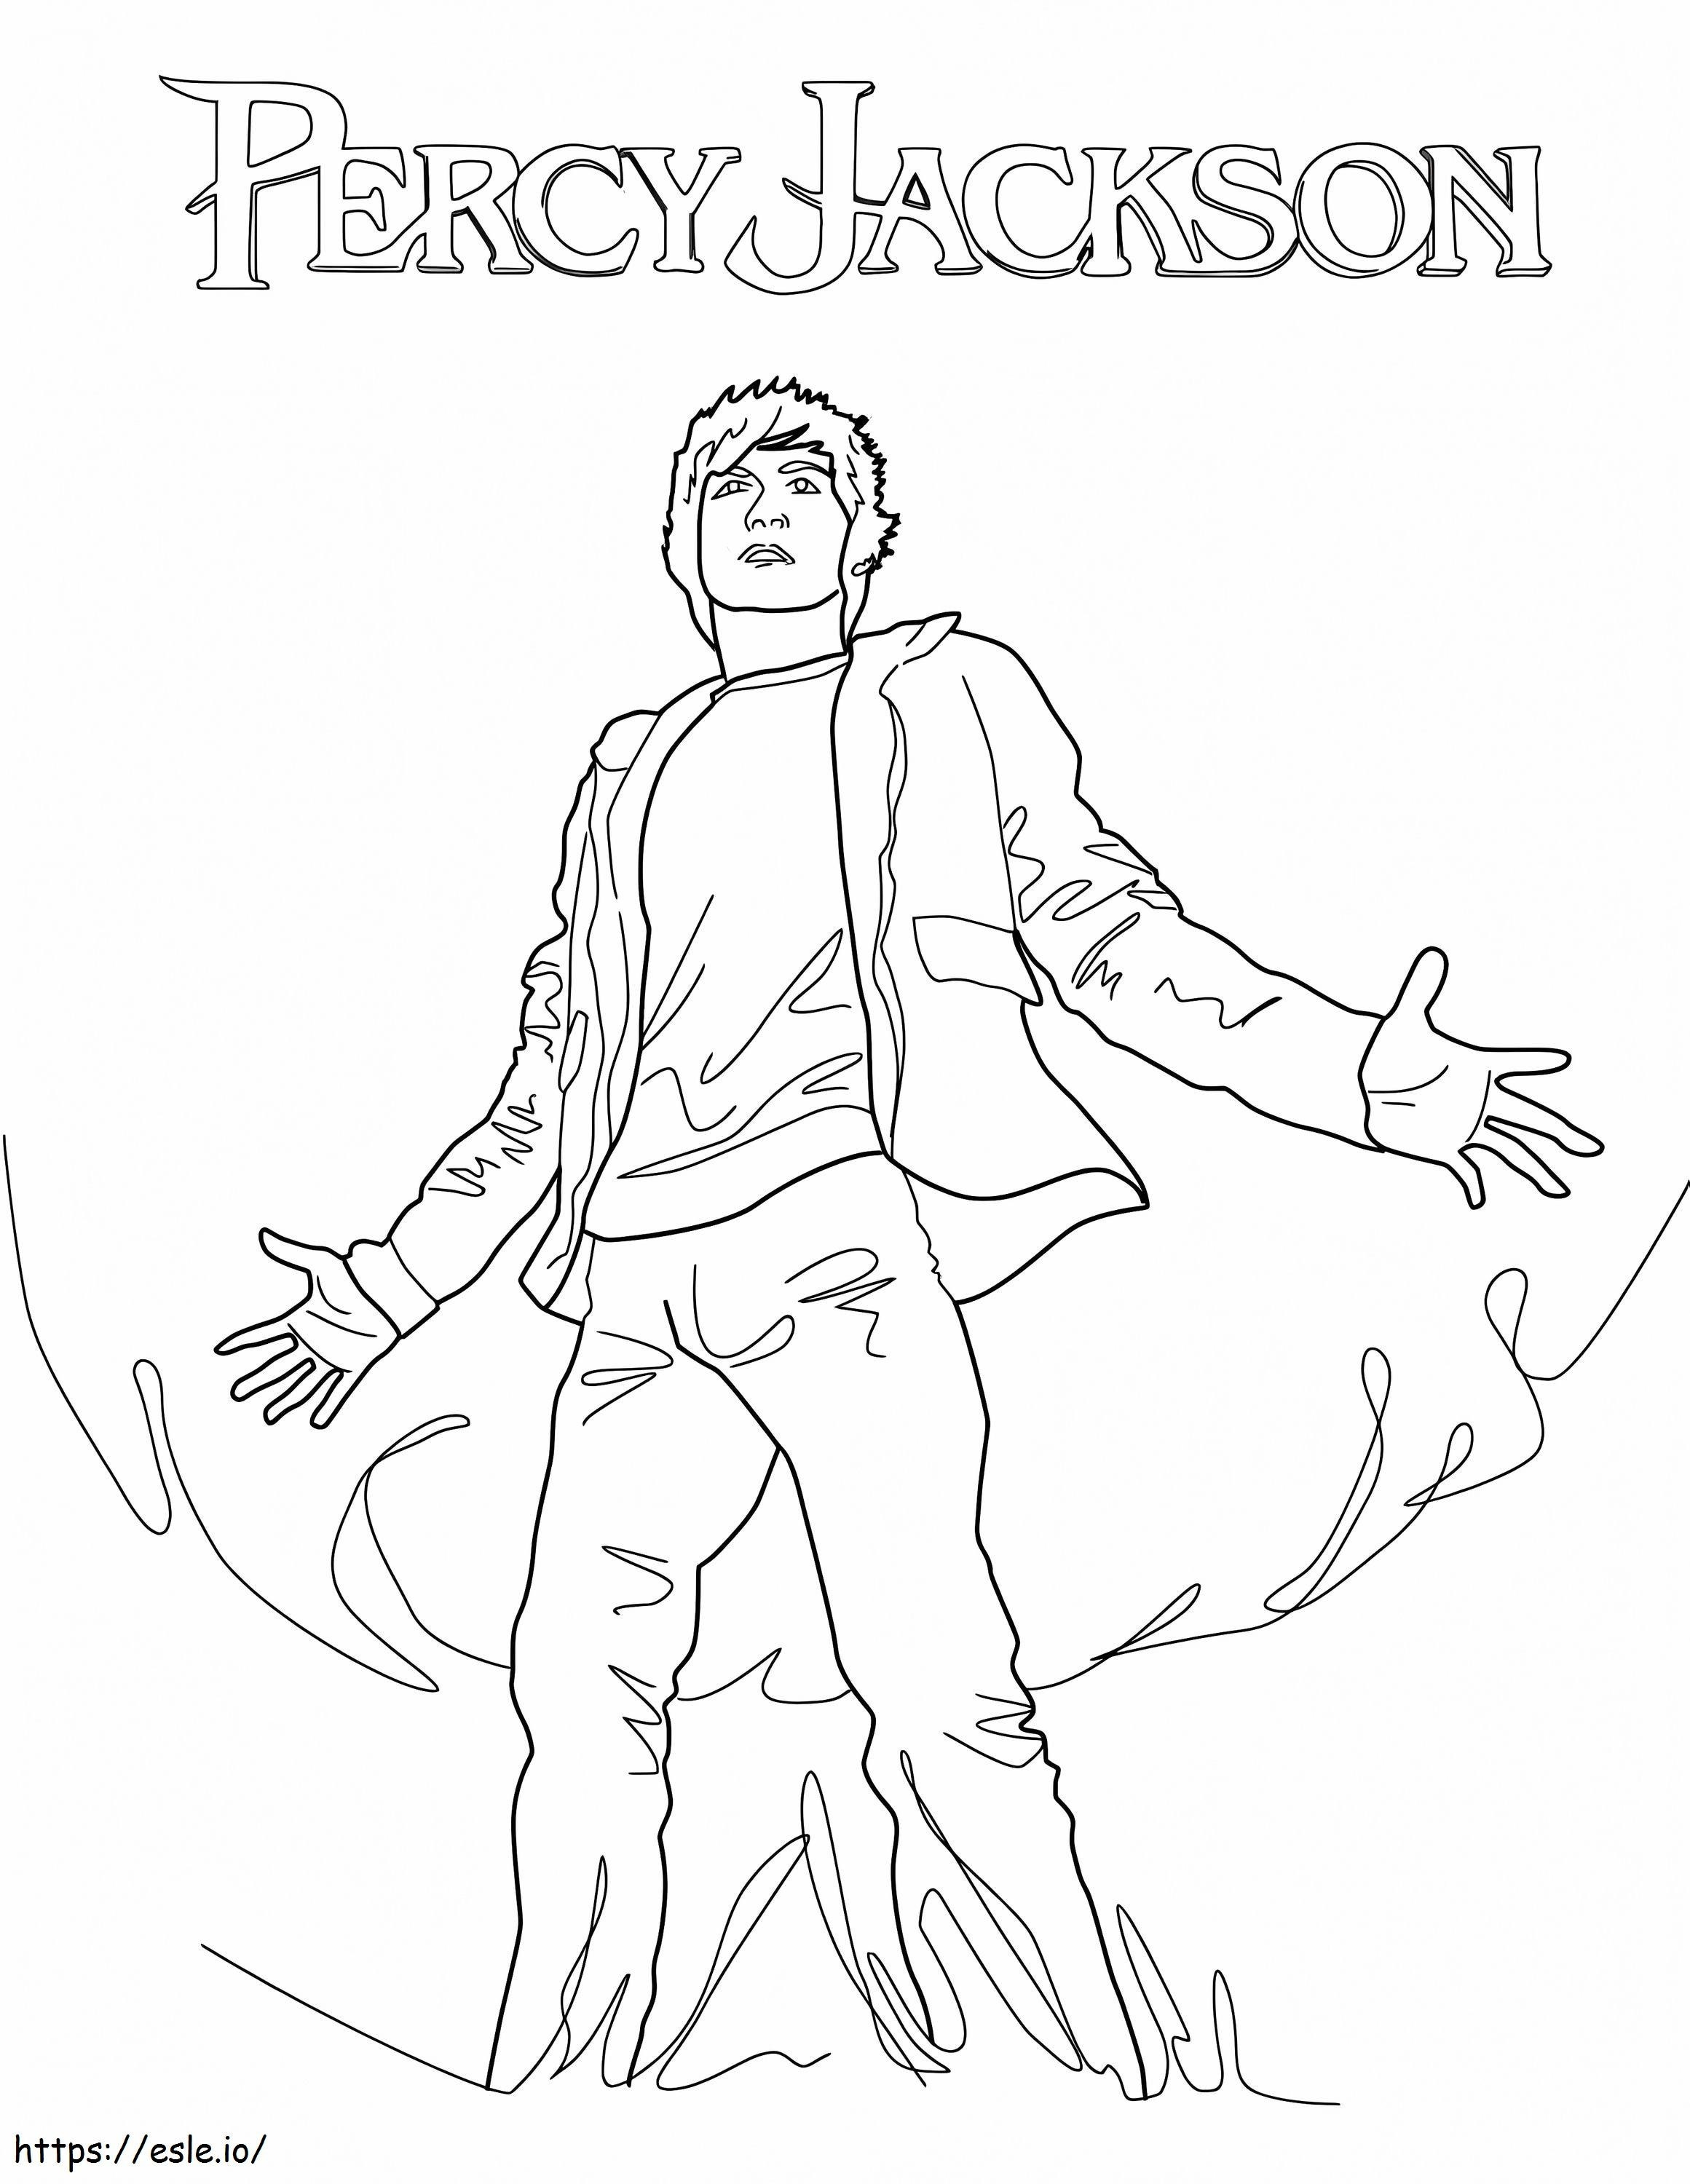 Puterea lui Percy Jackson de colorat